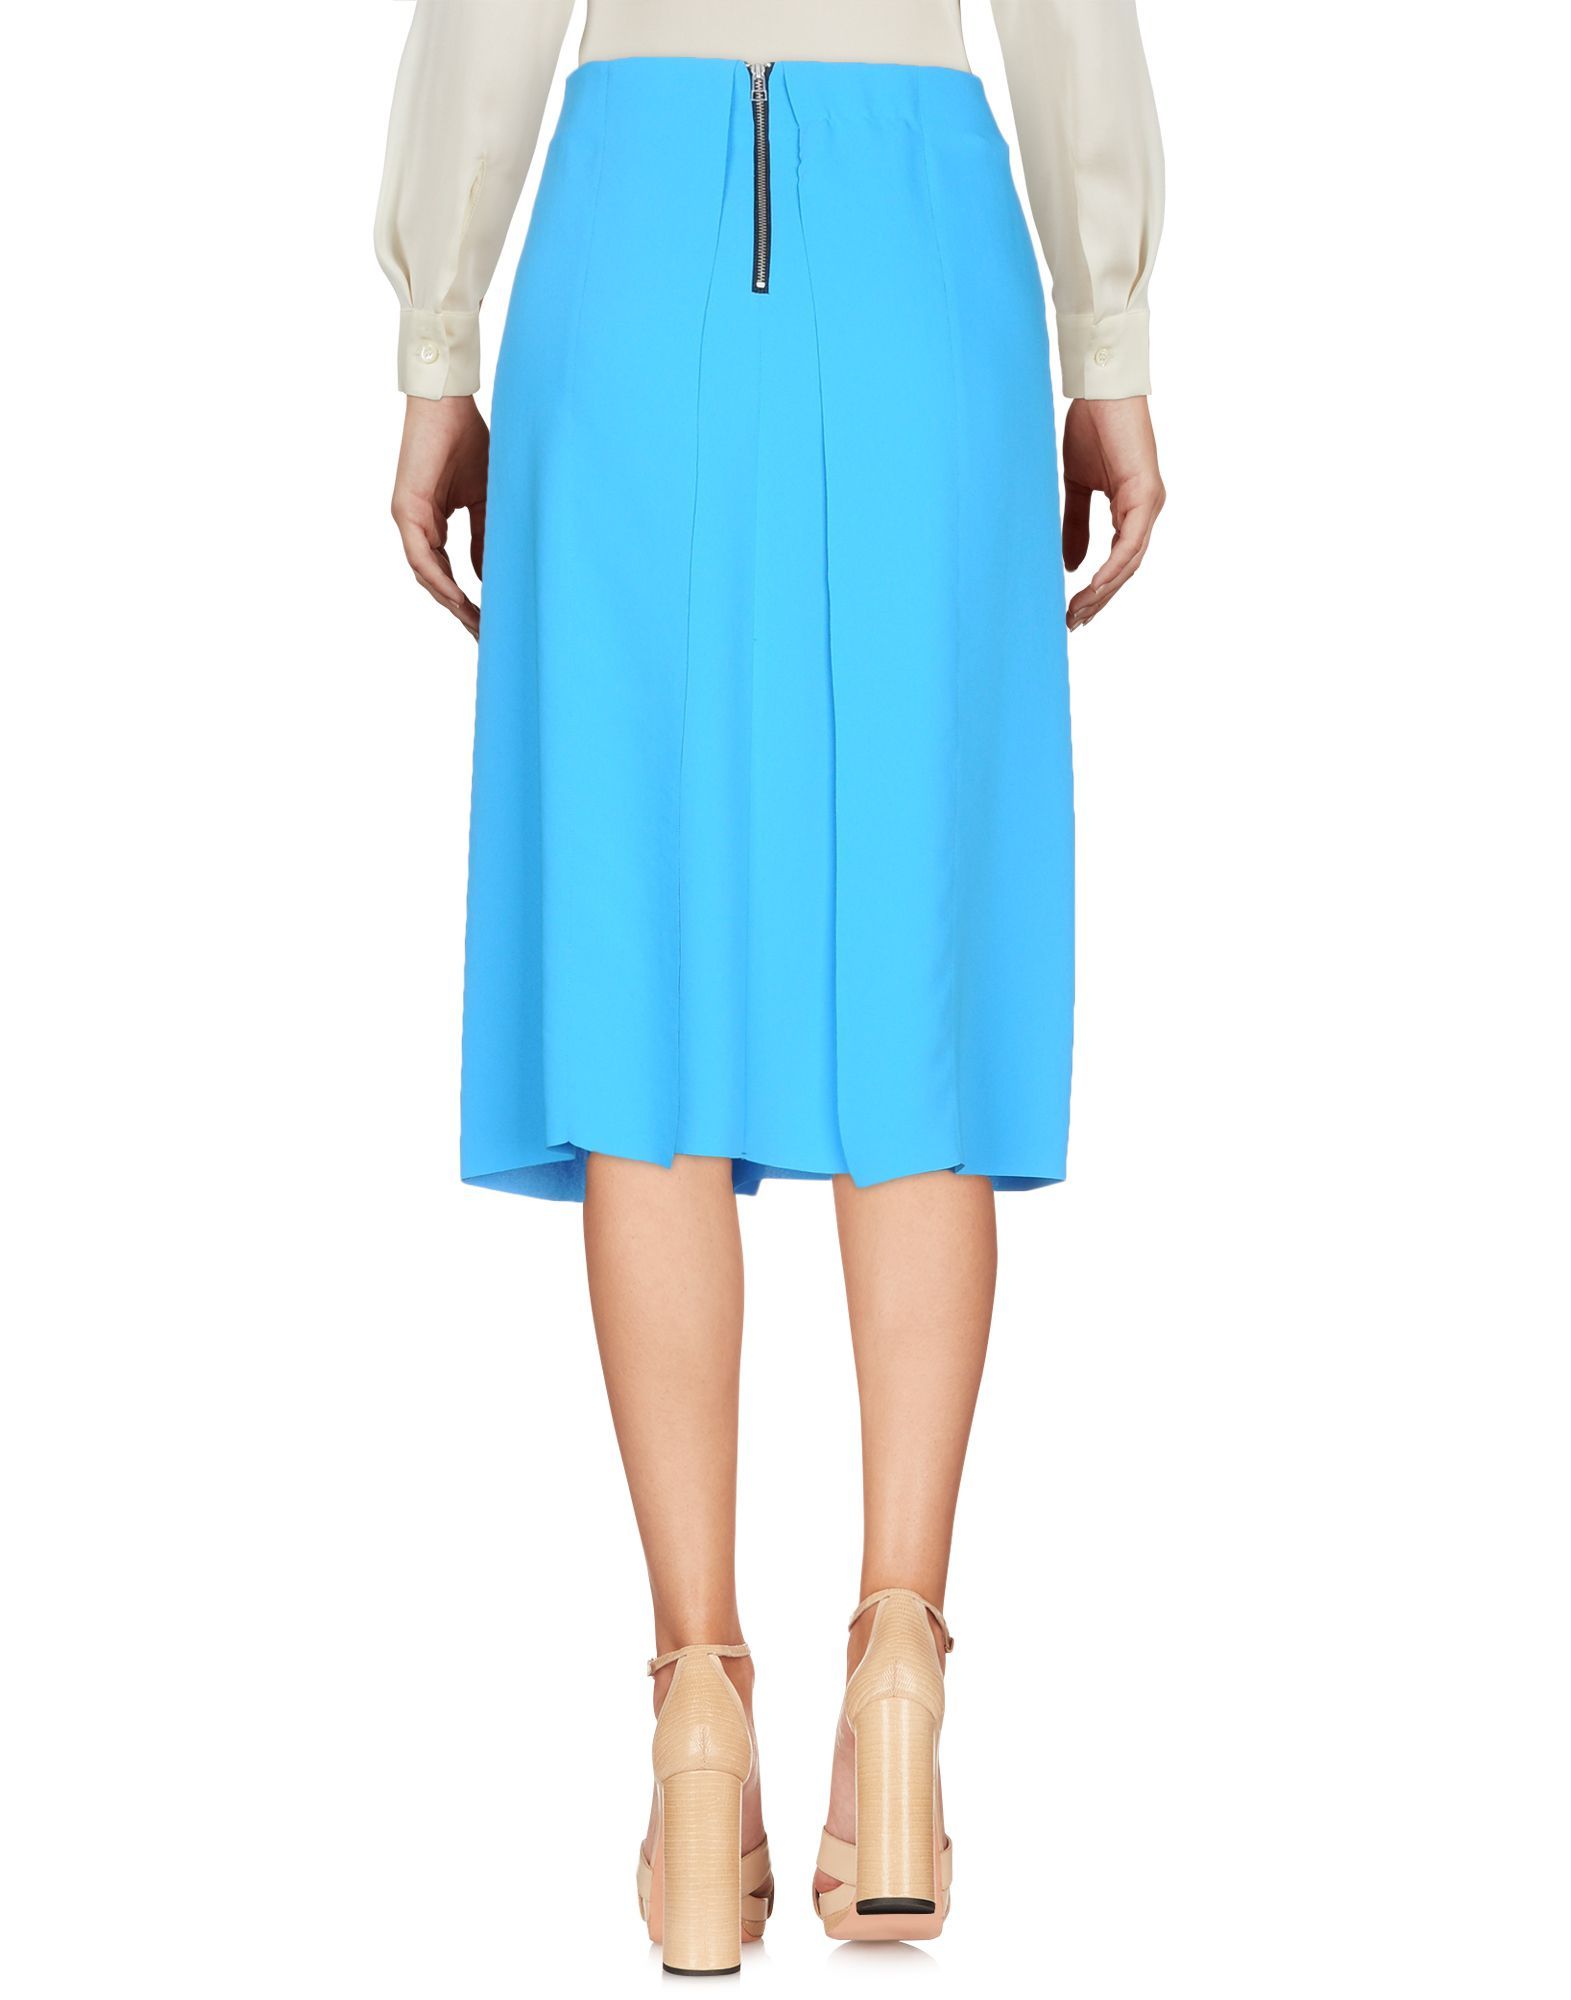 crepe, no appliqués, basic solid colour, no pockets, rear closure, zipper closure, unlined, skirt